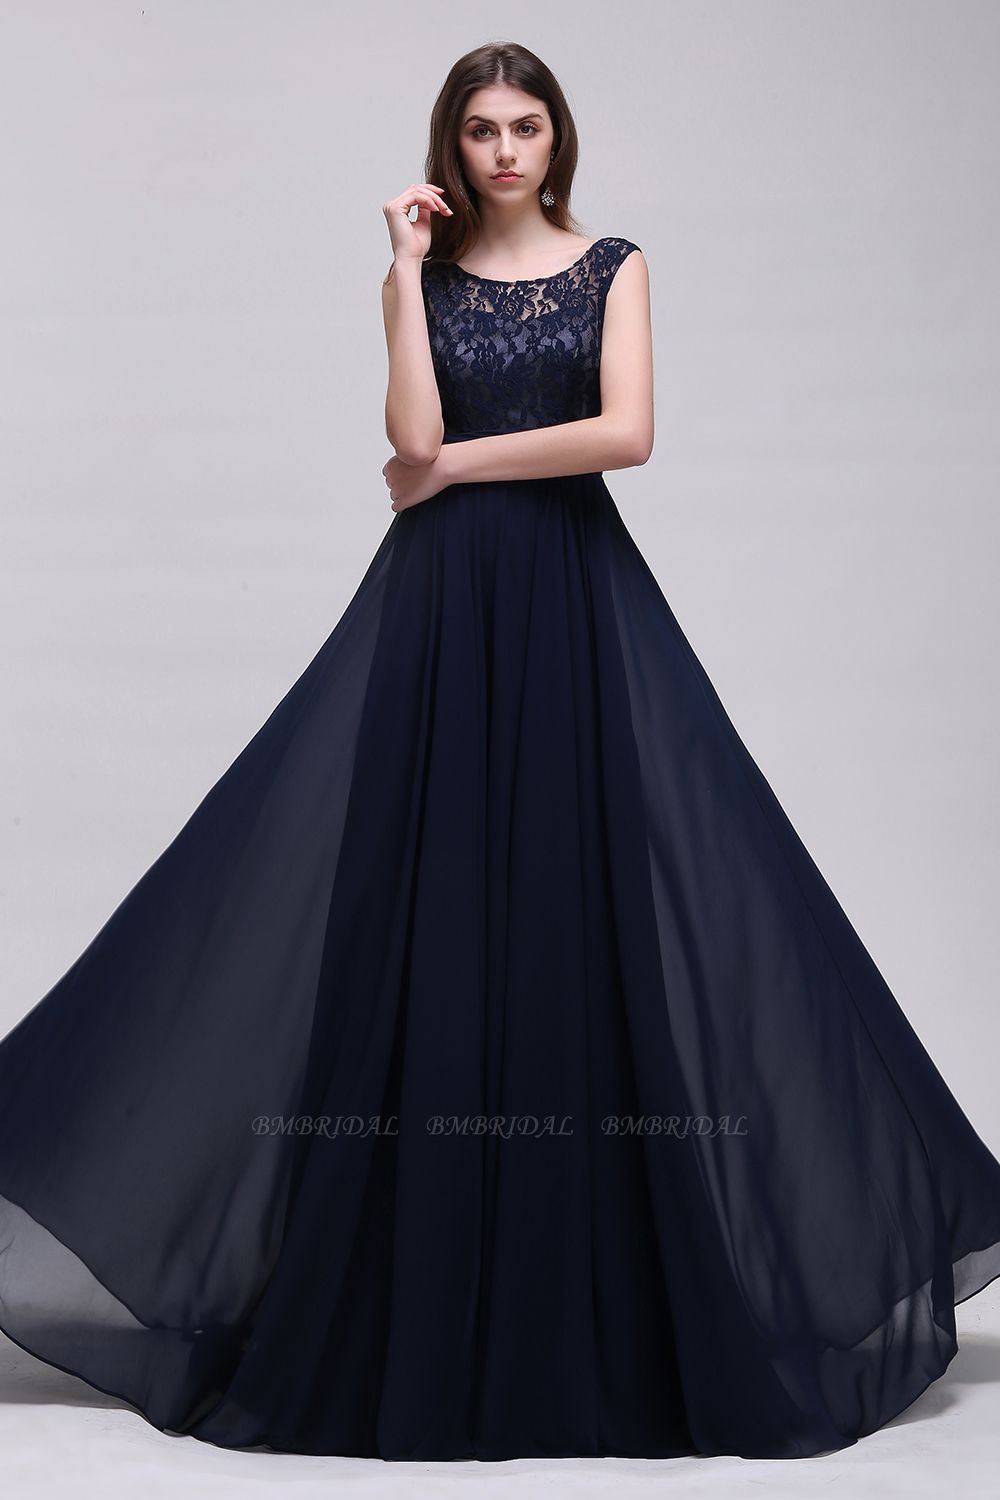 BMbridal Sleeveless Lace Long Chiffon Prom Dress Online